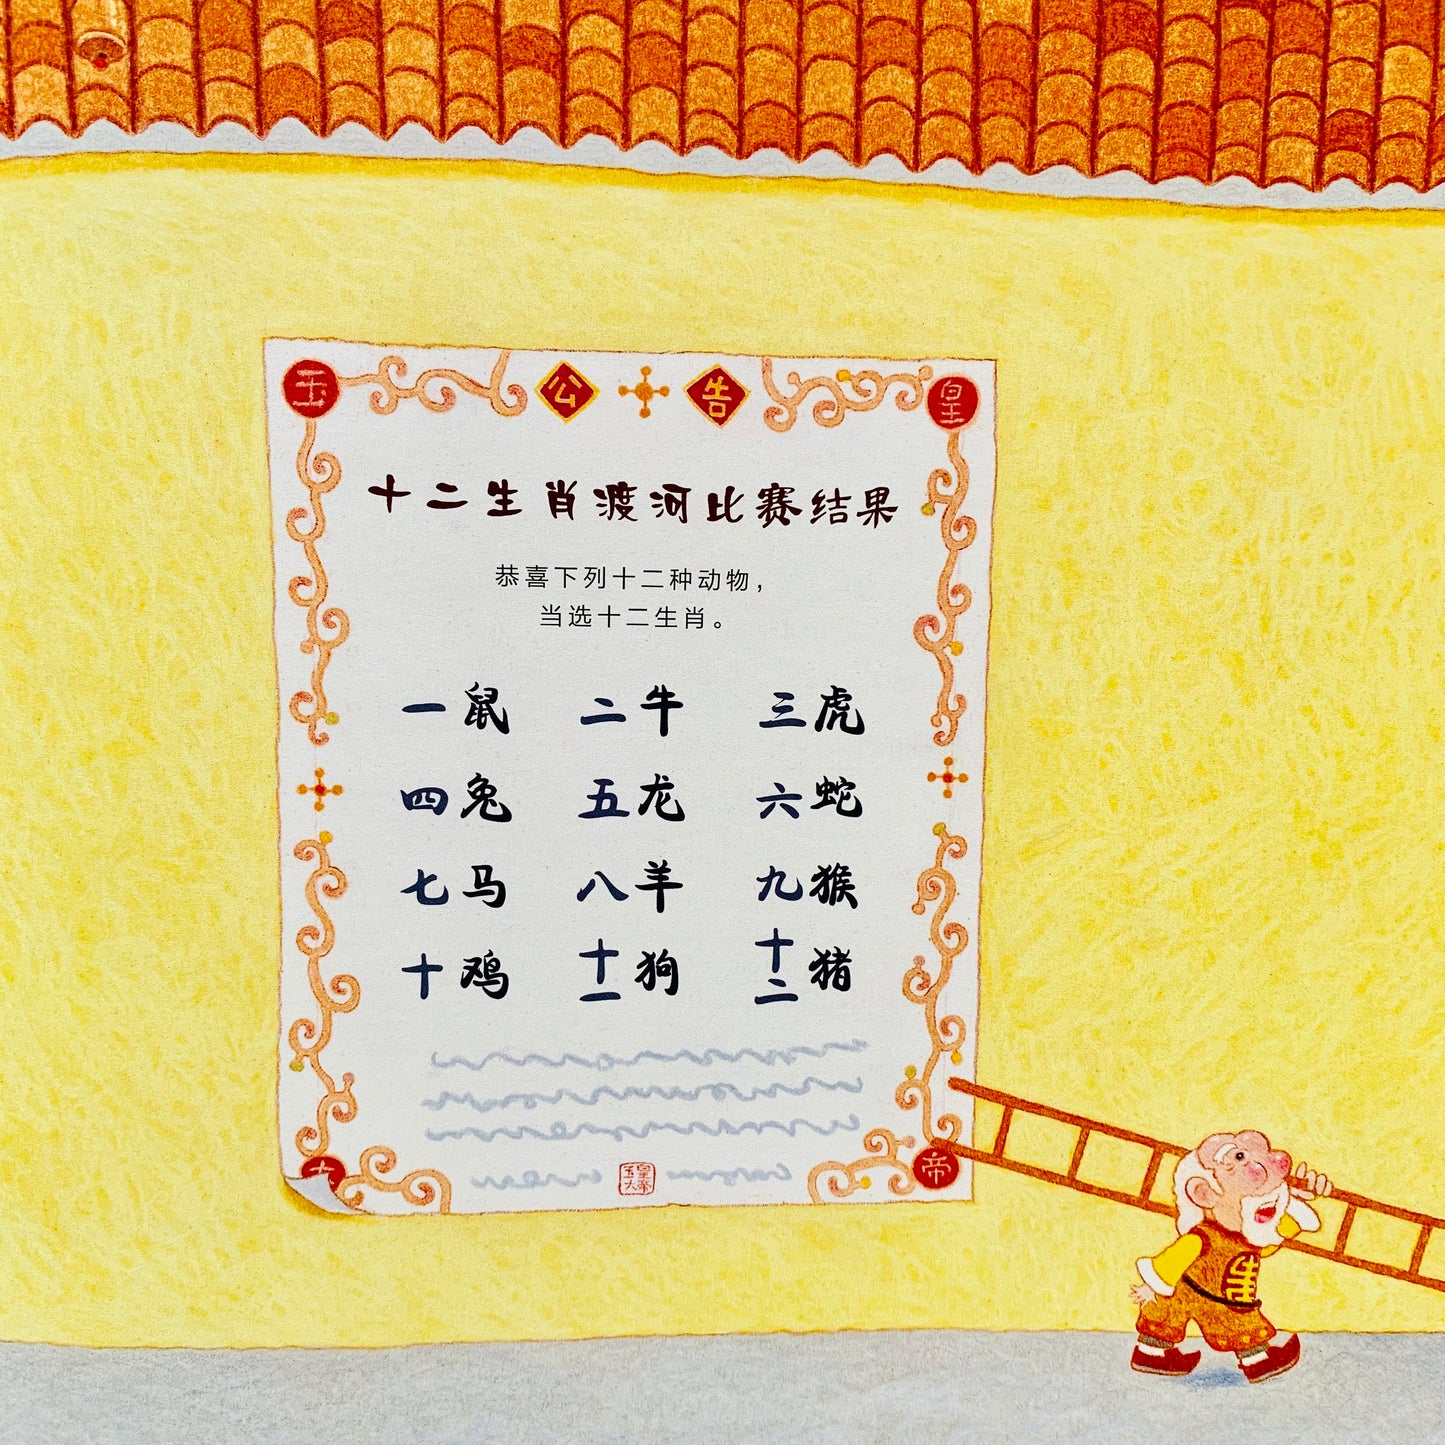 十二生肖的故事 (Story of the Chinese Zodiac)